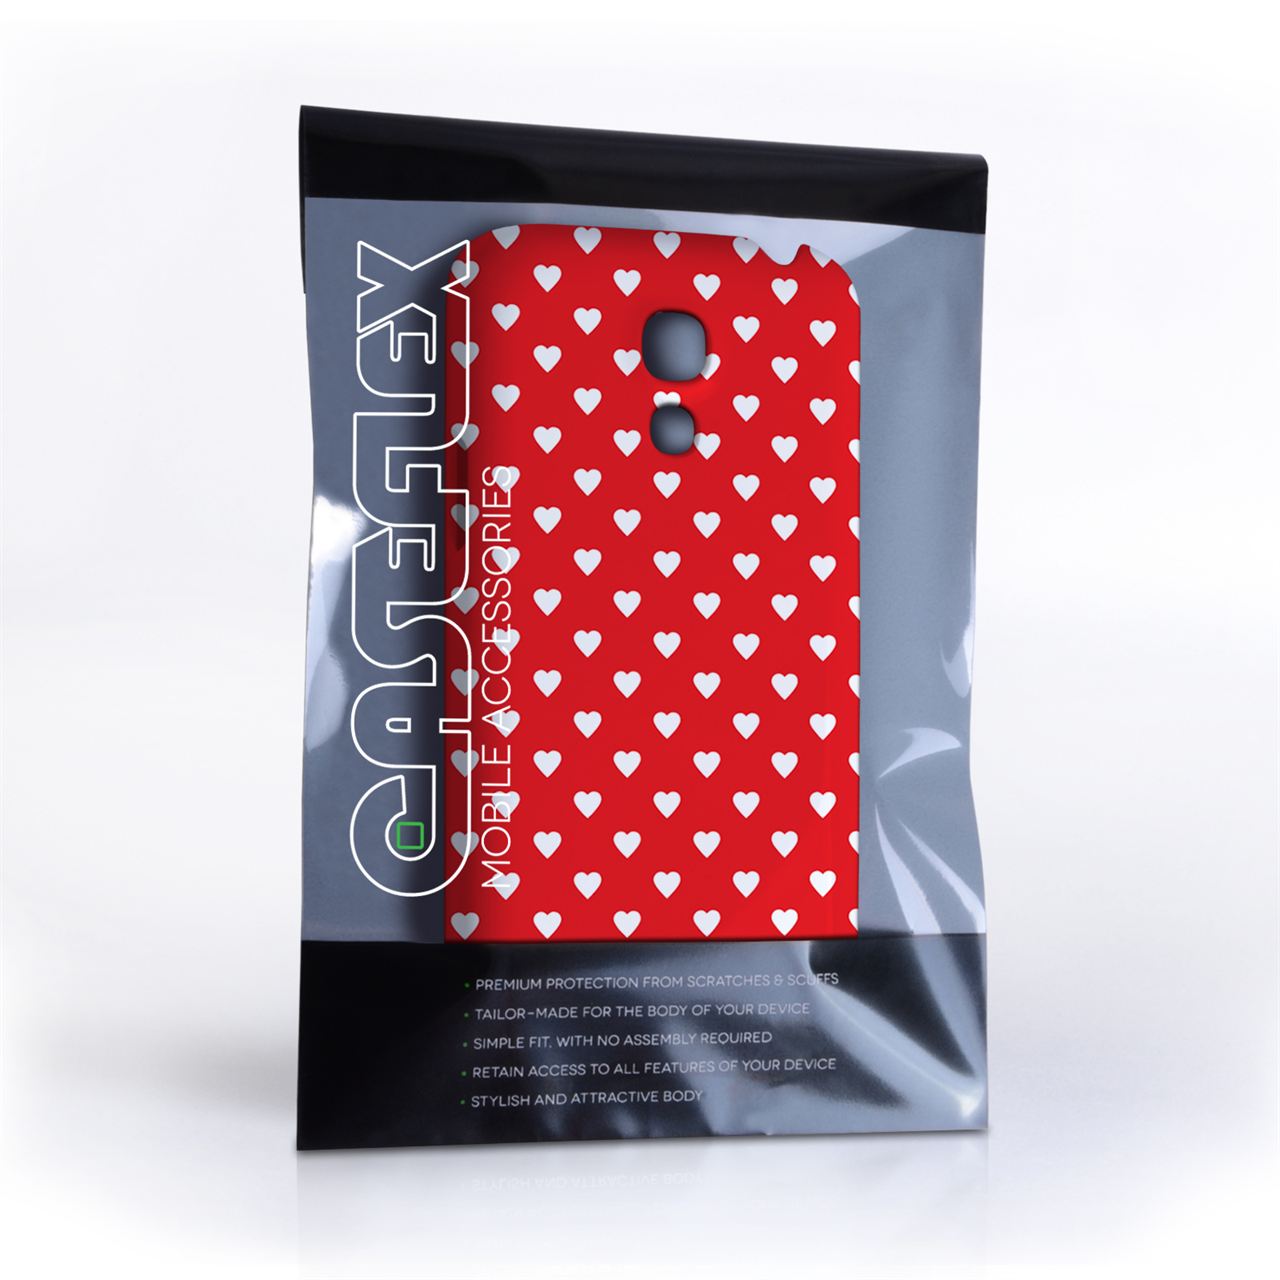 Caseflex Samsung Galaxy S4 Mini Cute Hearts Red and White Case